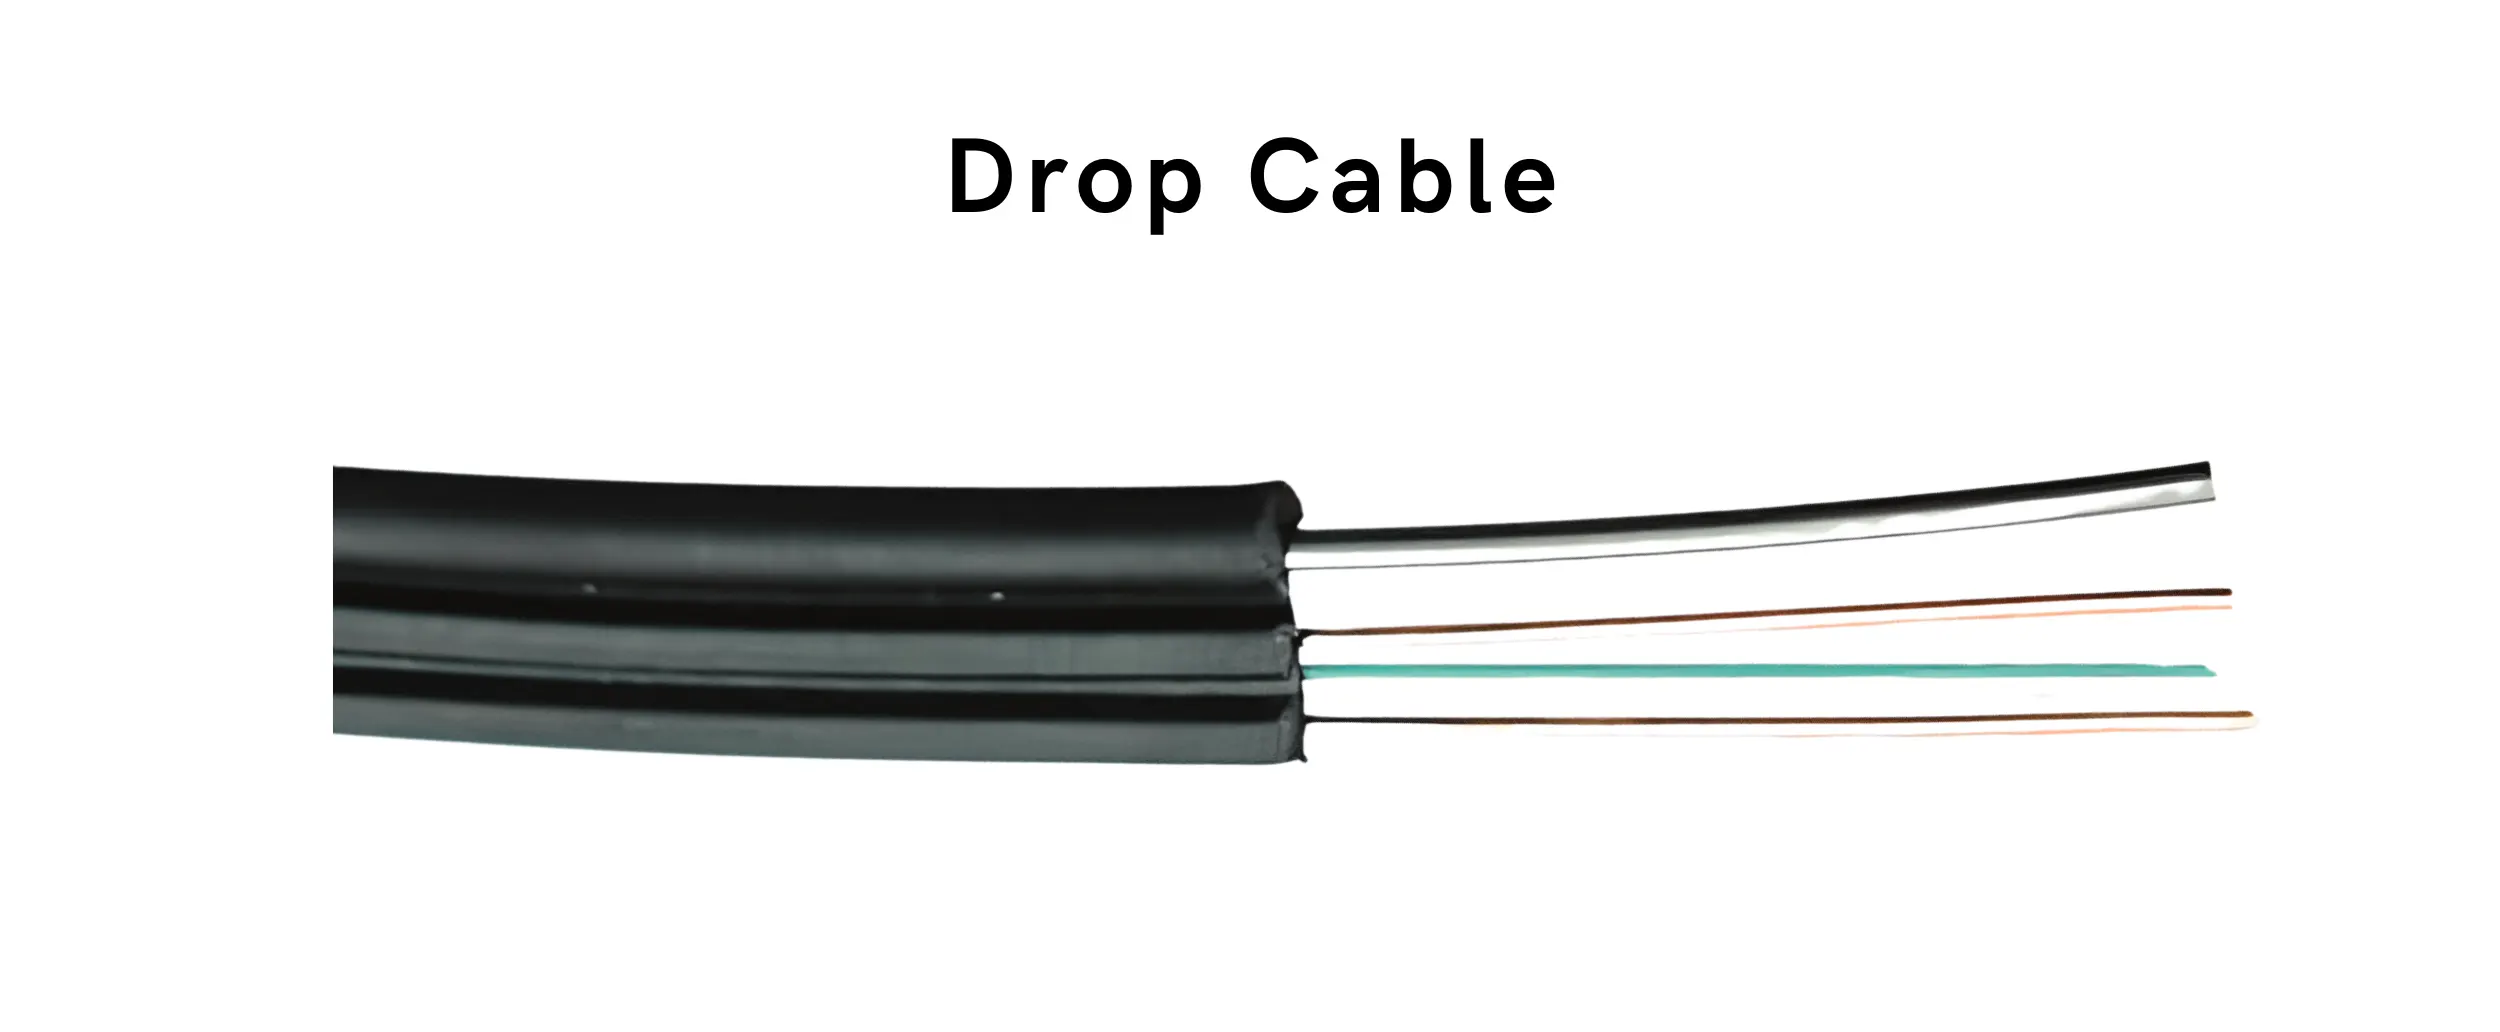 Fiber optic drop cable